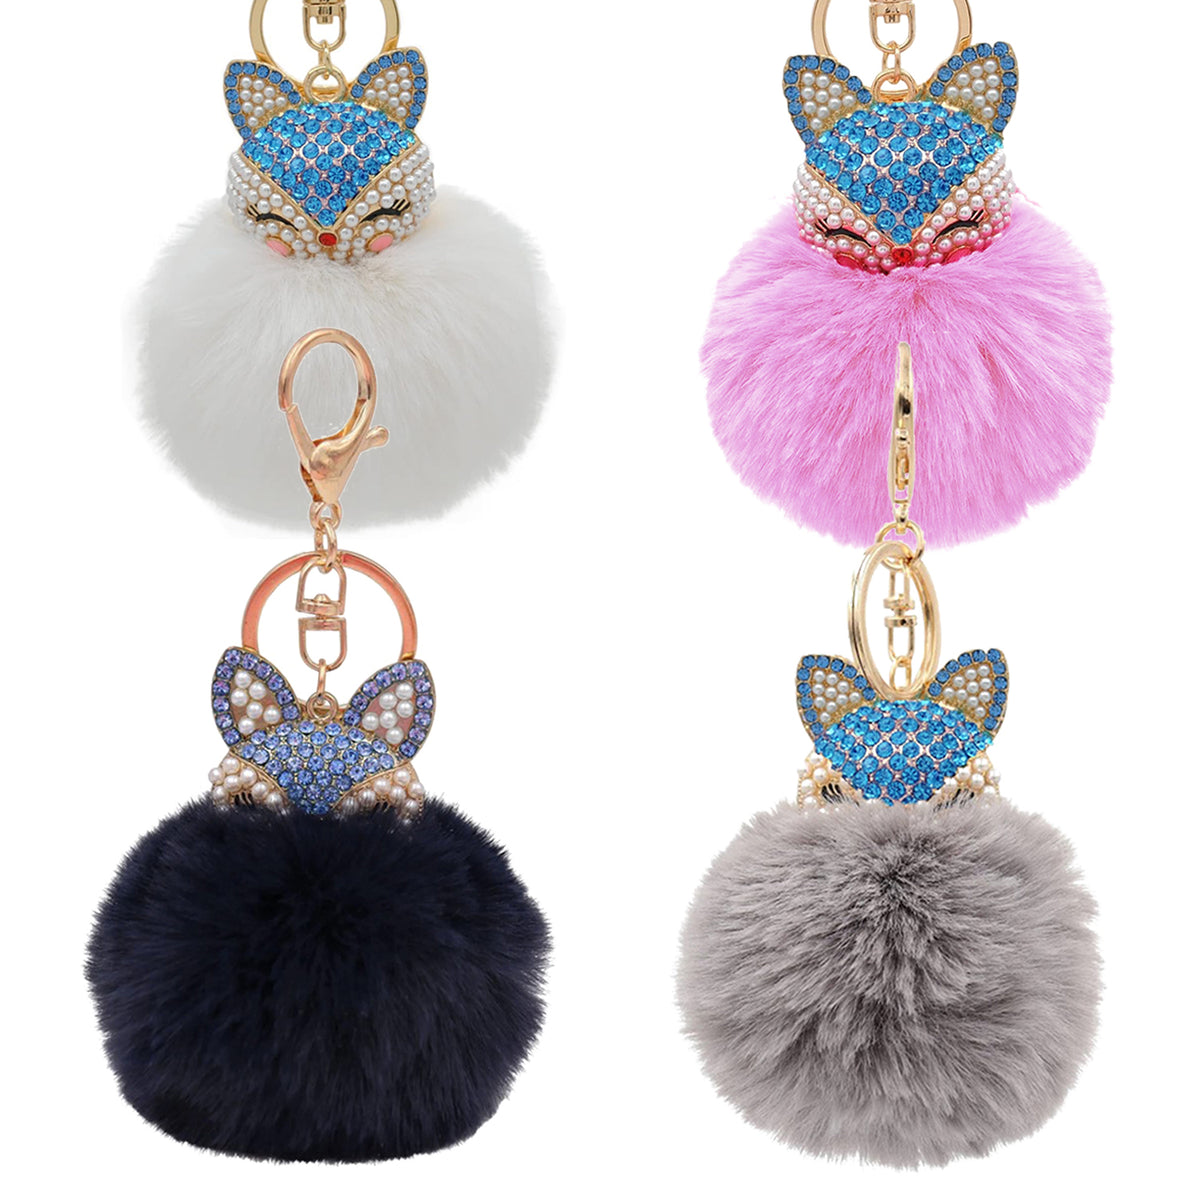 Nihaou Fashion Fox Faux-Fur Pom Pom Keychain – Stylish and Cute for Keys or Bag!, Grey